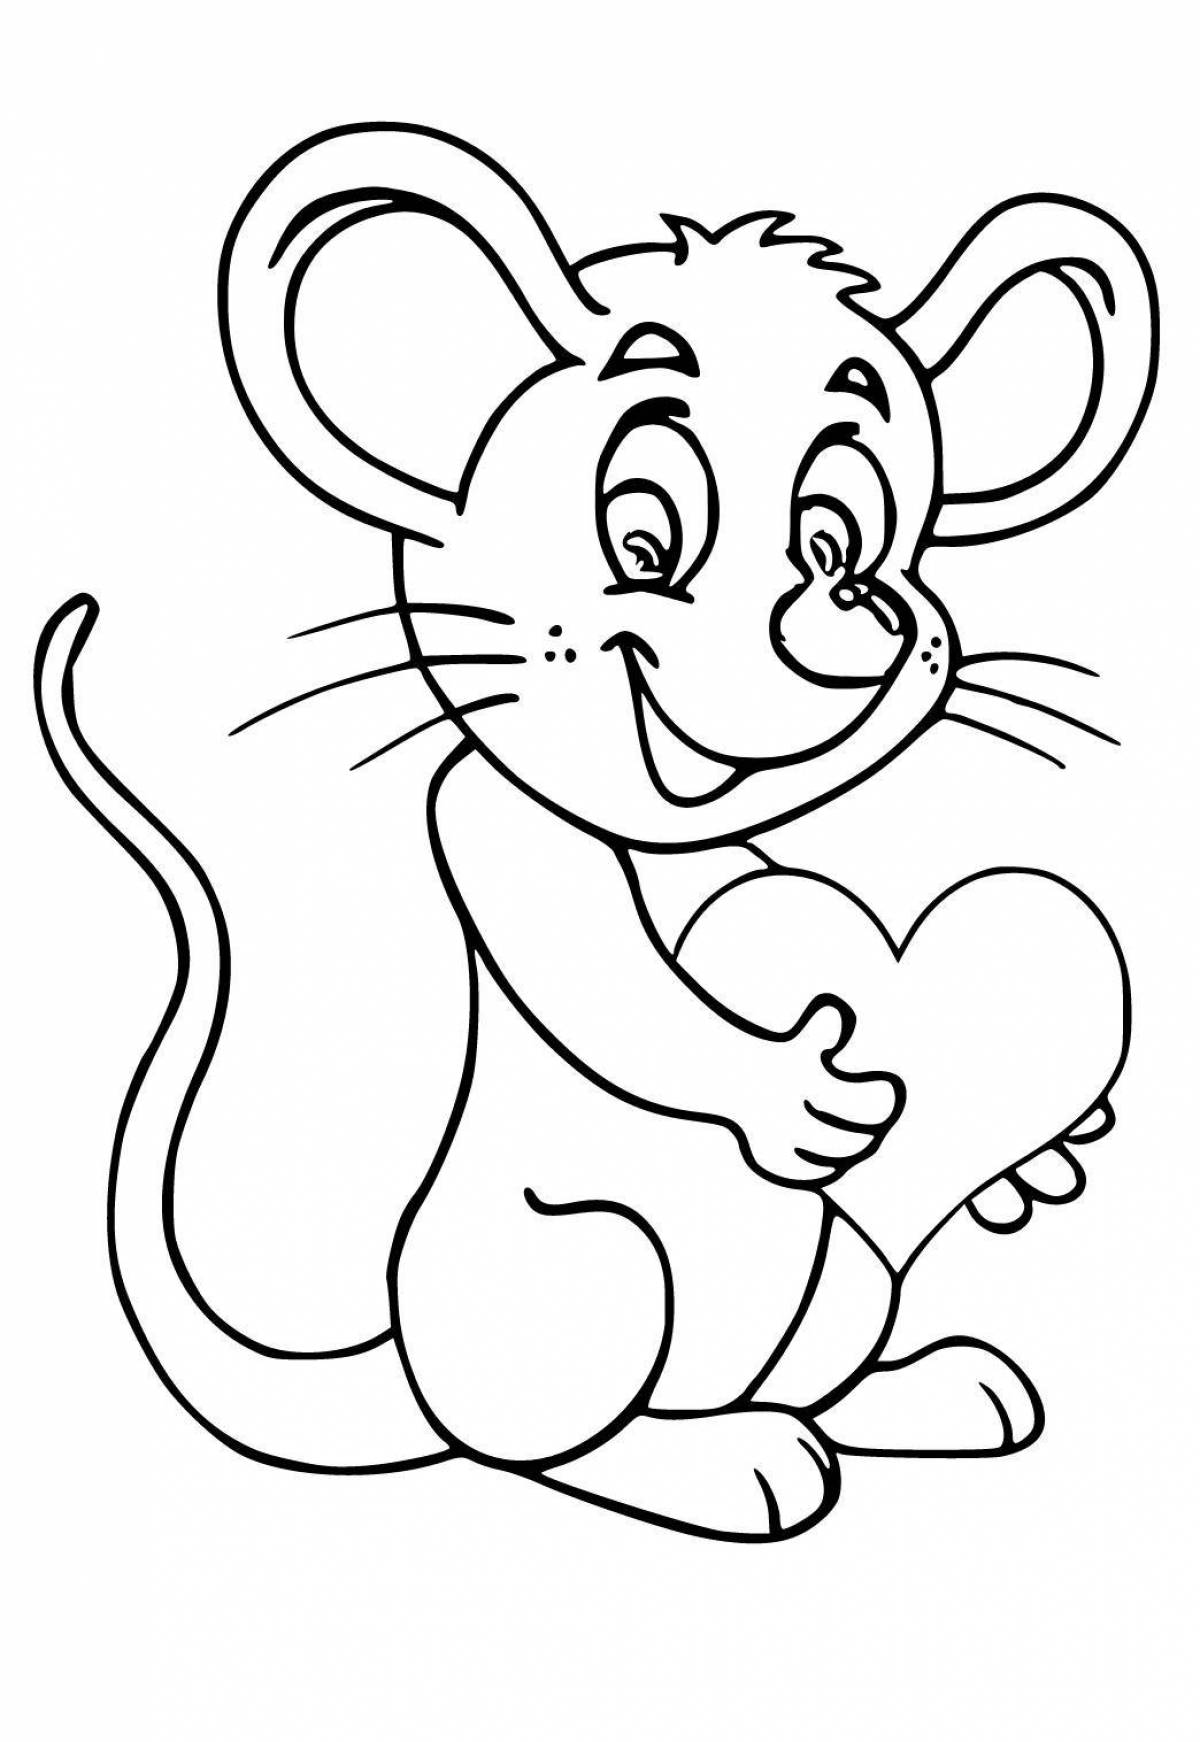 Детская раскраска мышь для детей 2-3 лет